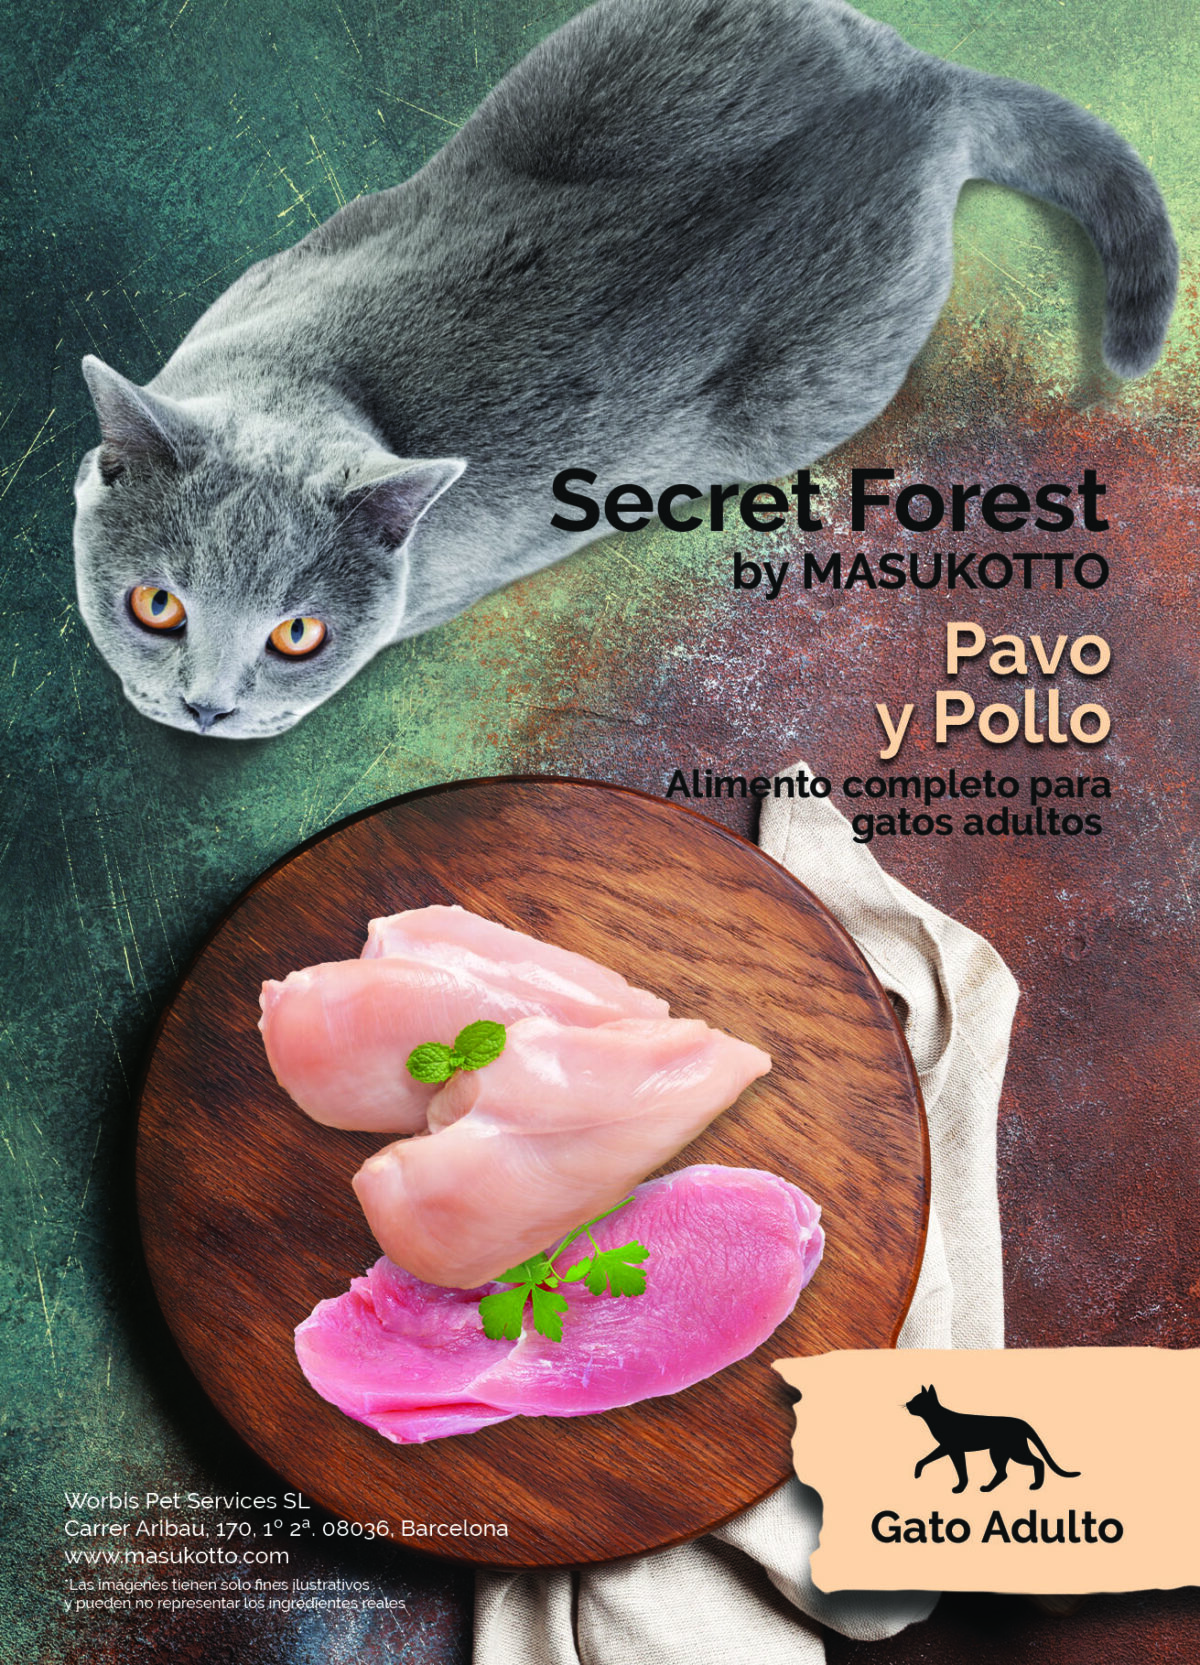 Secret Forest Connoisseur gato adulto pavo y pollo